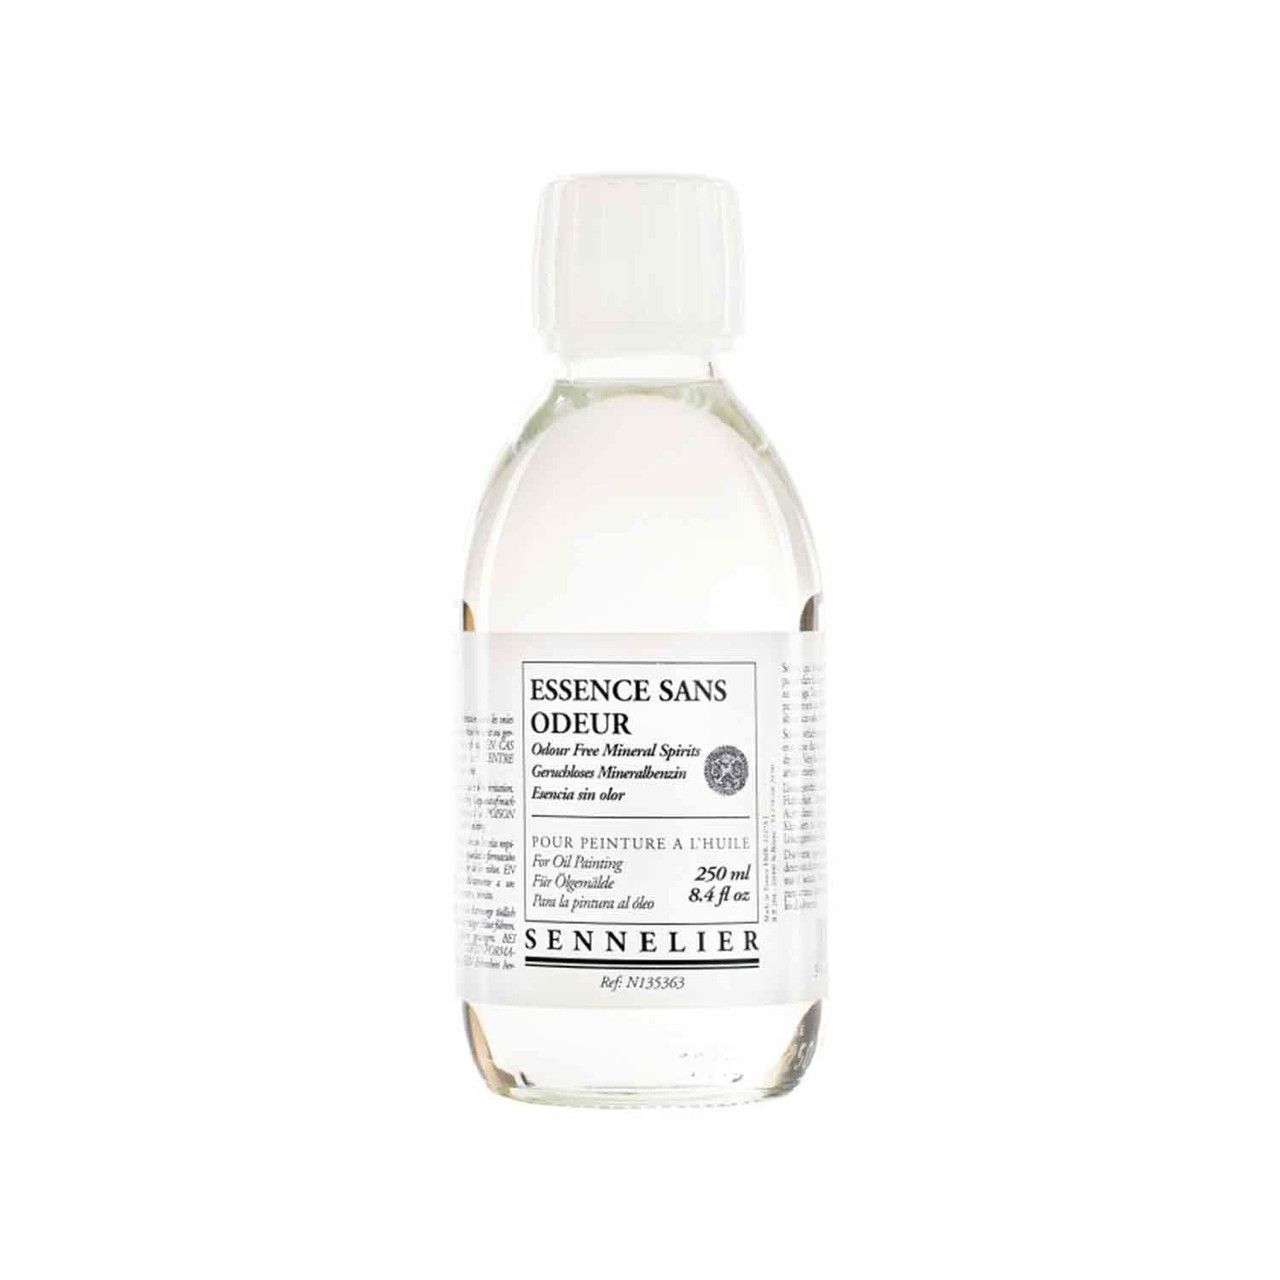 Sennelier Rectified Turpentine Spirits - 1 Liter Bottle